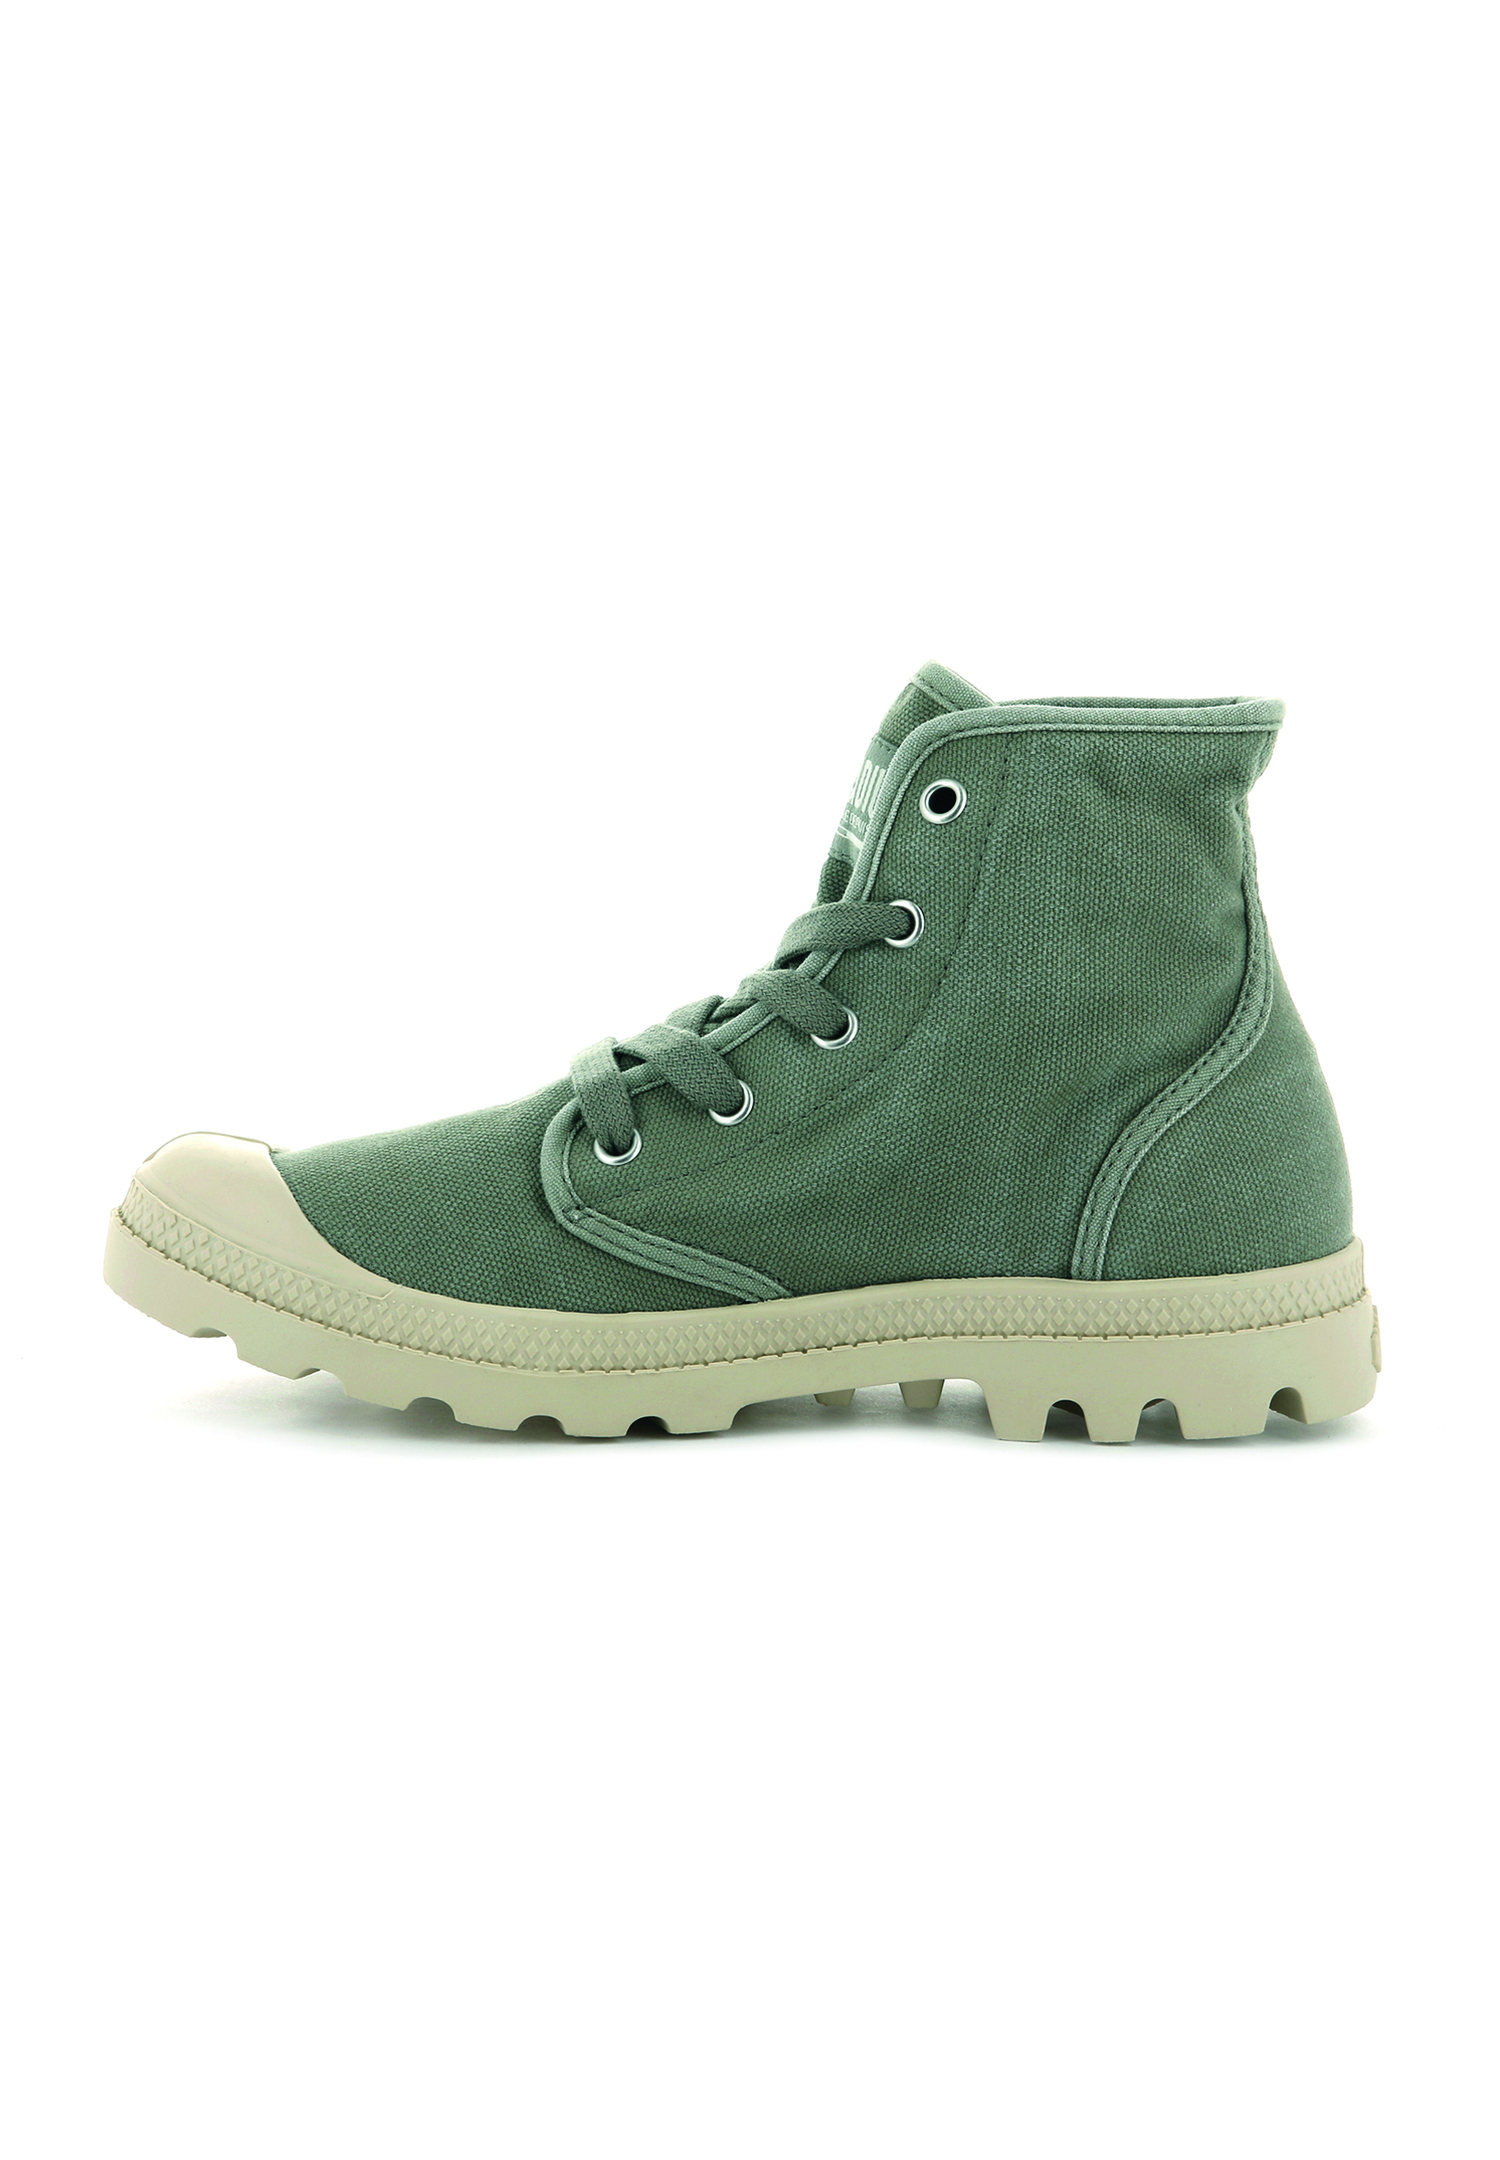 PALLADIUM Damen US Pampa Hi Boots Stiefelette 92352 grün